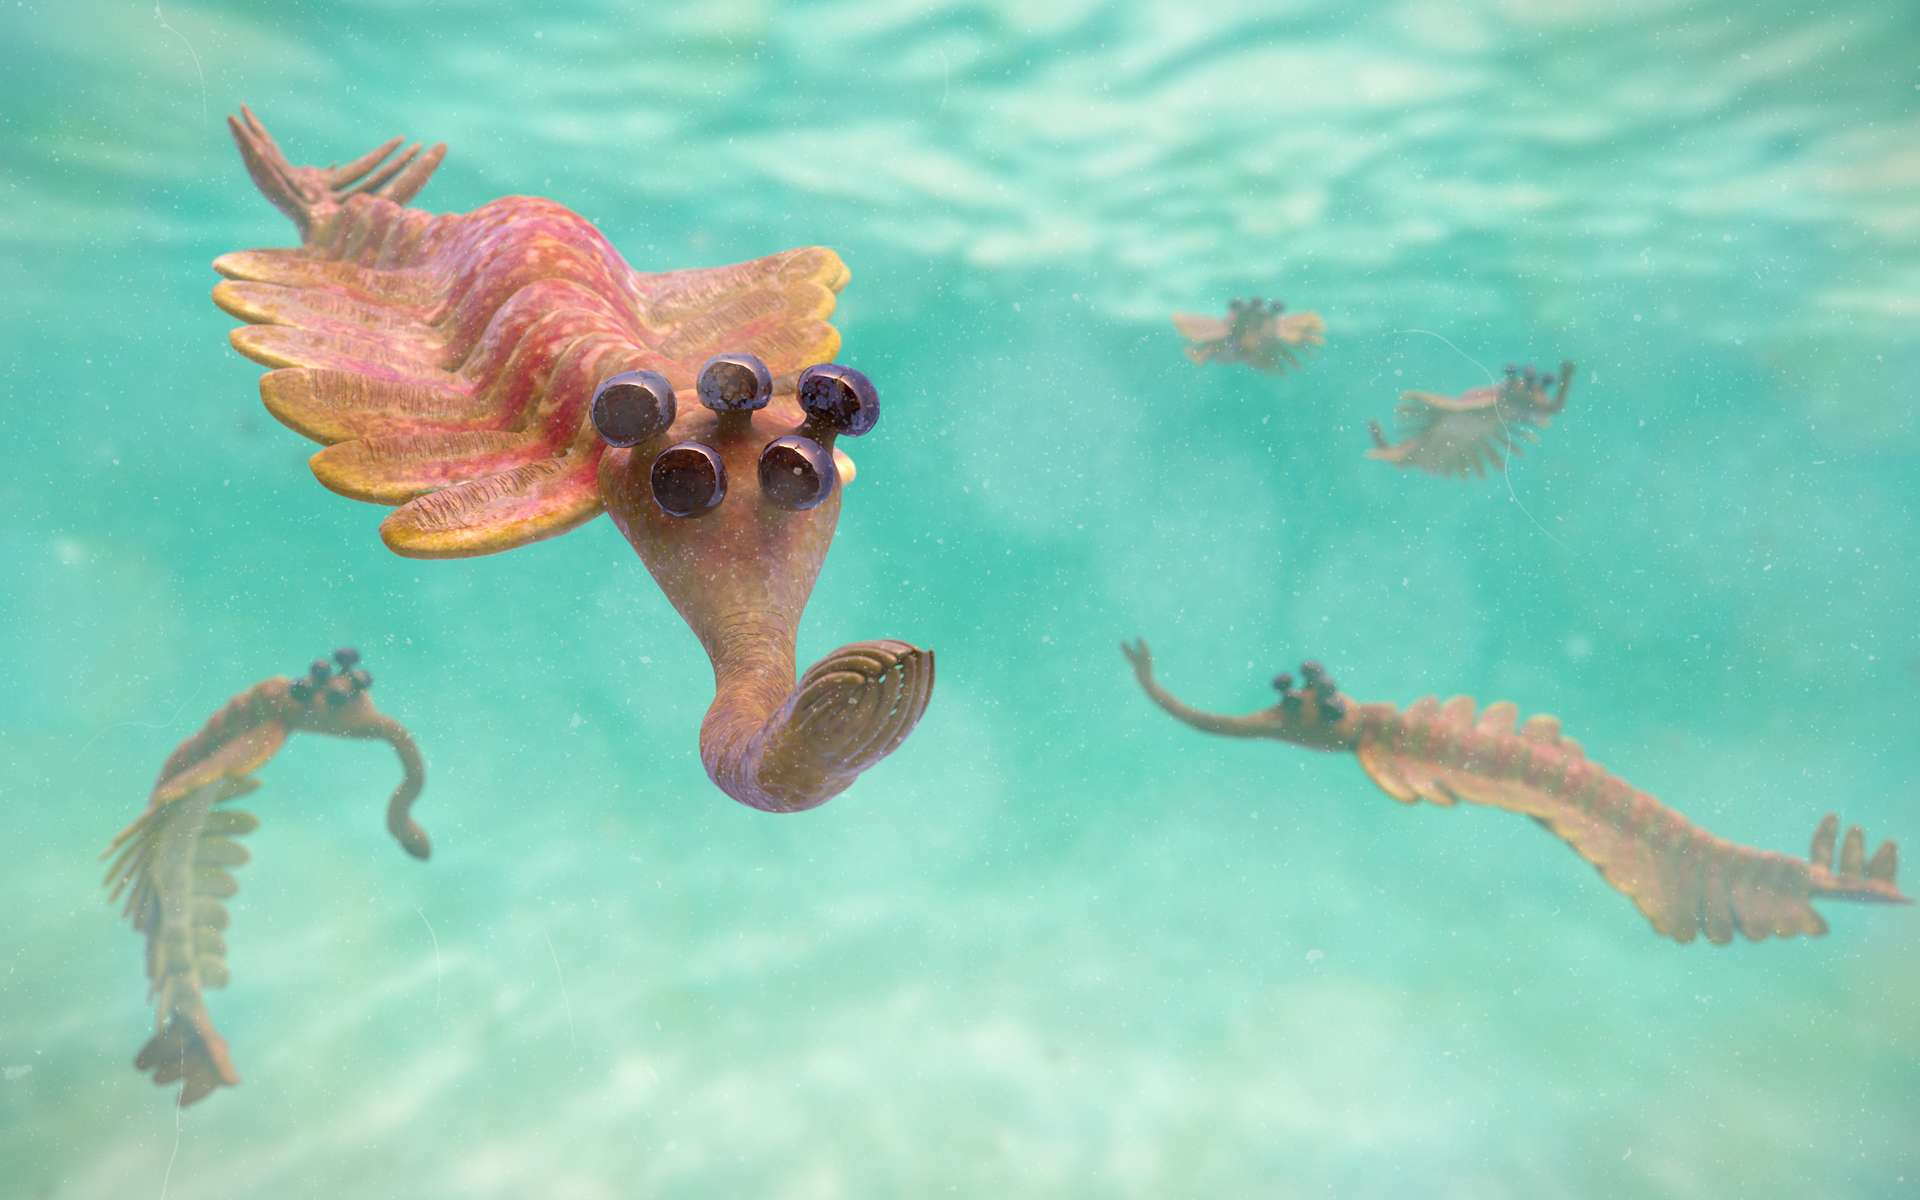 Opabinia regalis possédait cinq yeux et un proboscis et peuplait les mers du Cambrien, il y a environ 500 millions d'années. © dottedyeti, Adobe Stock